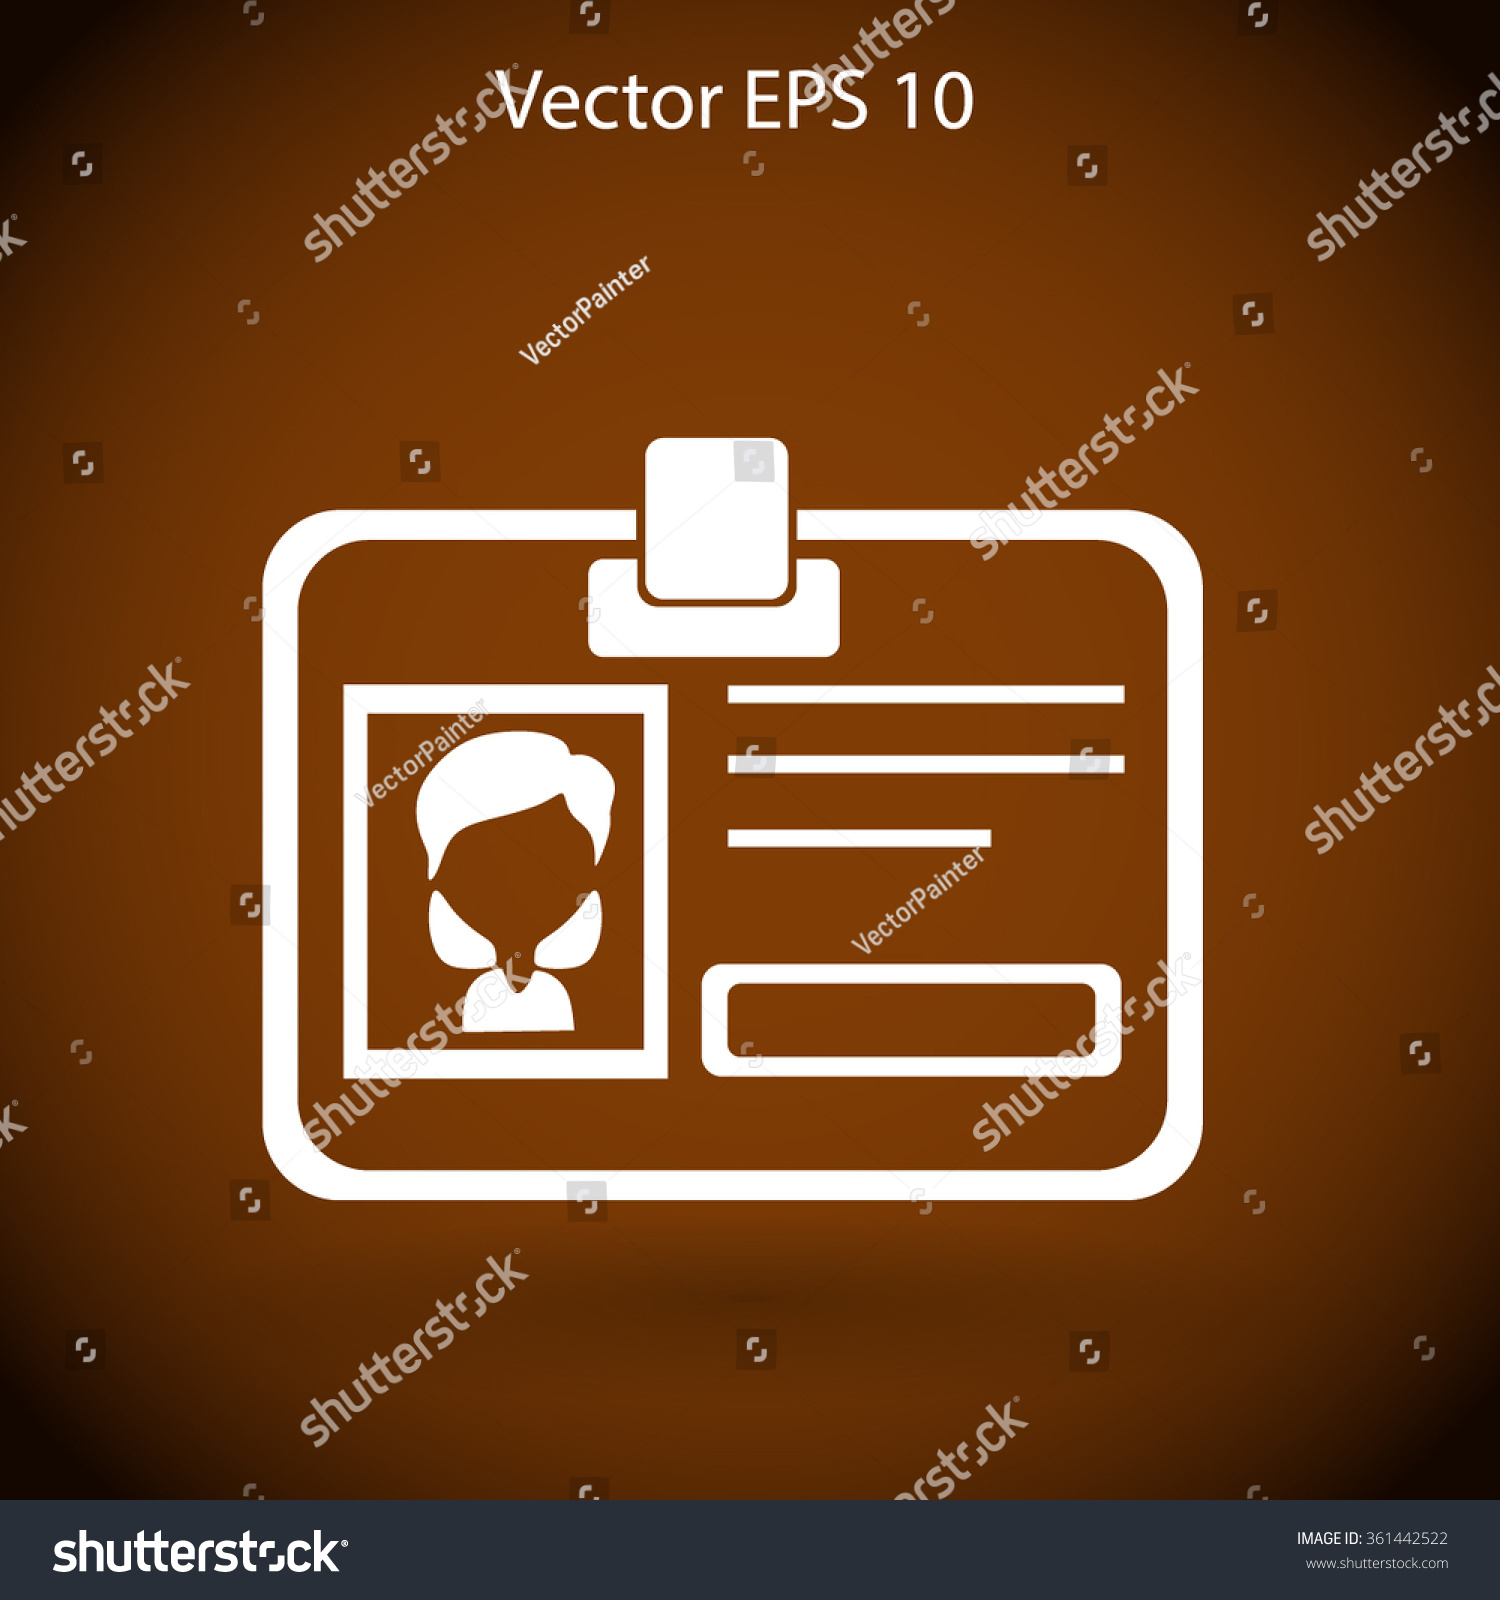 Edit Vectors Free Online - Badge vector | Shutterstock Editor